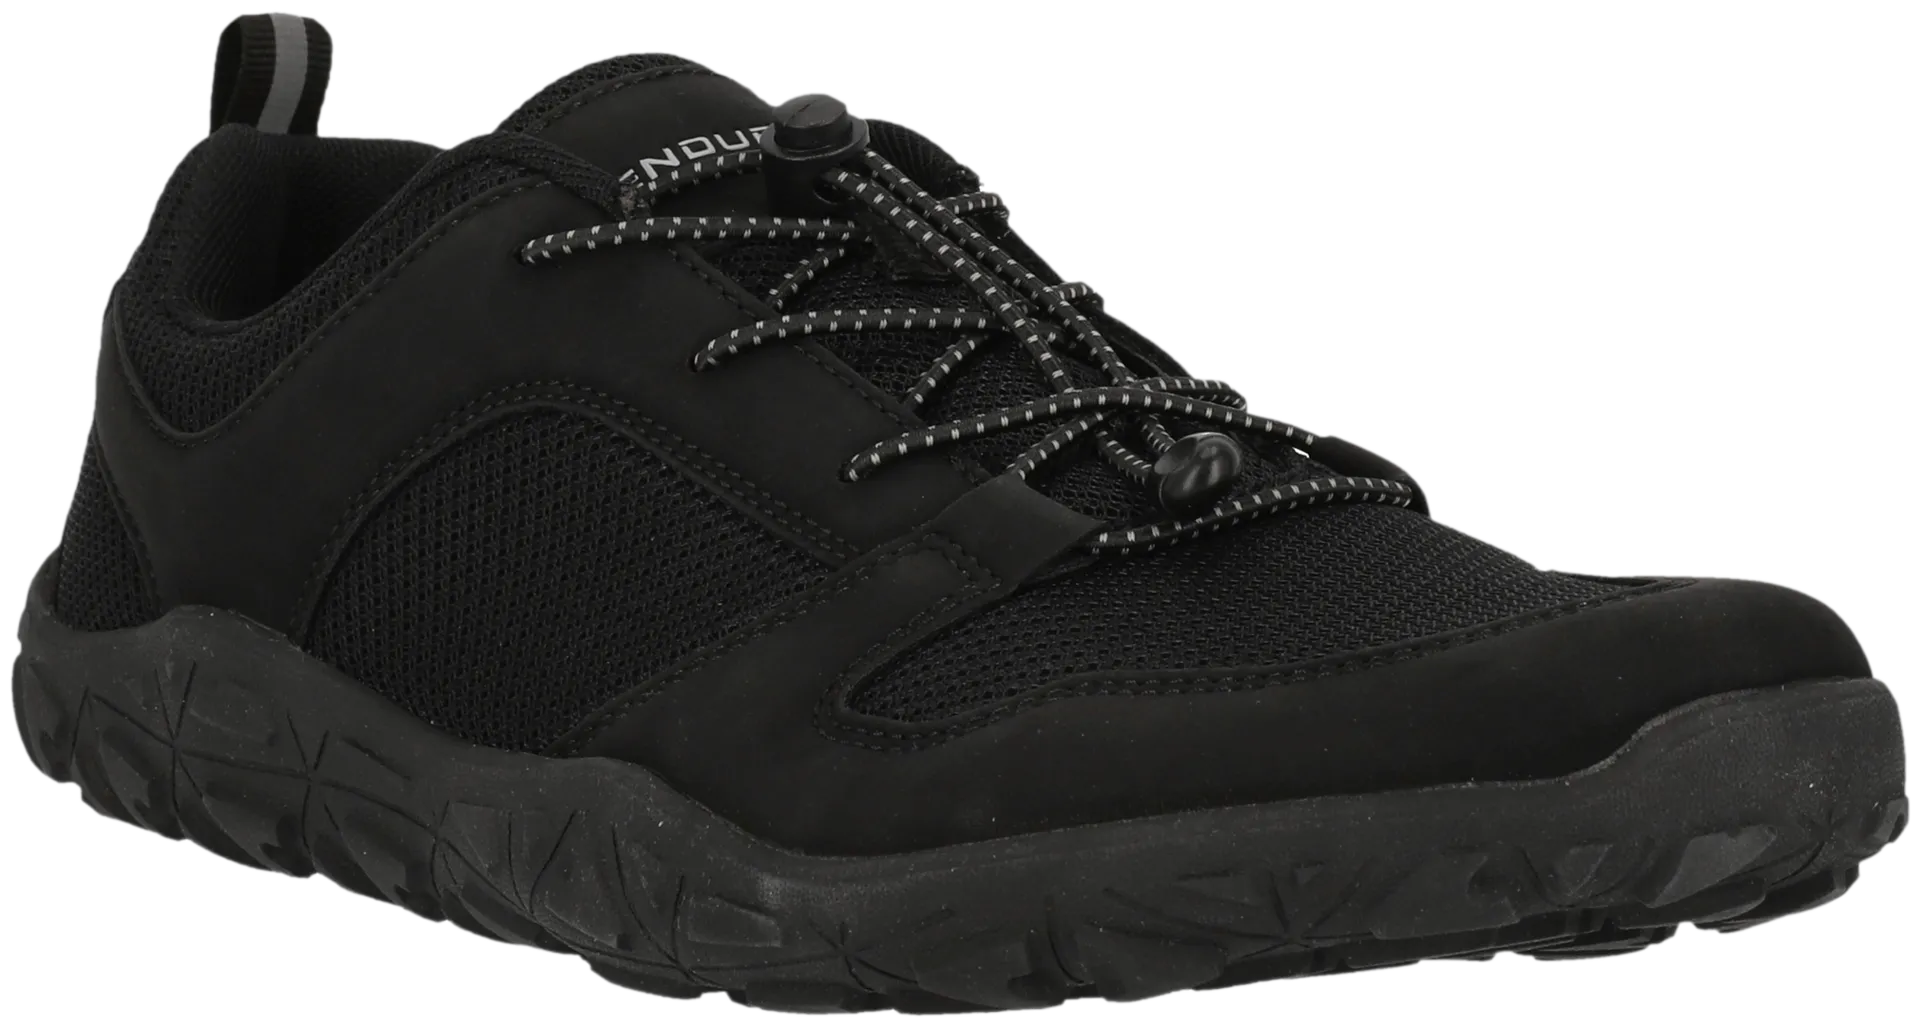 Endurance paljasjalkakenkä Kendy Barefoot Shoe unisex - 1001S Black Solid - 8